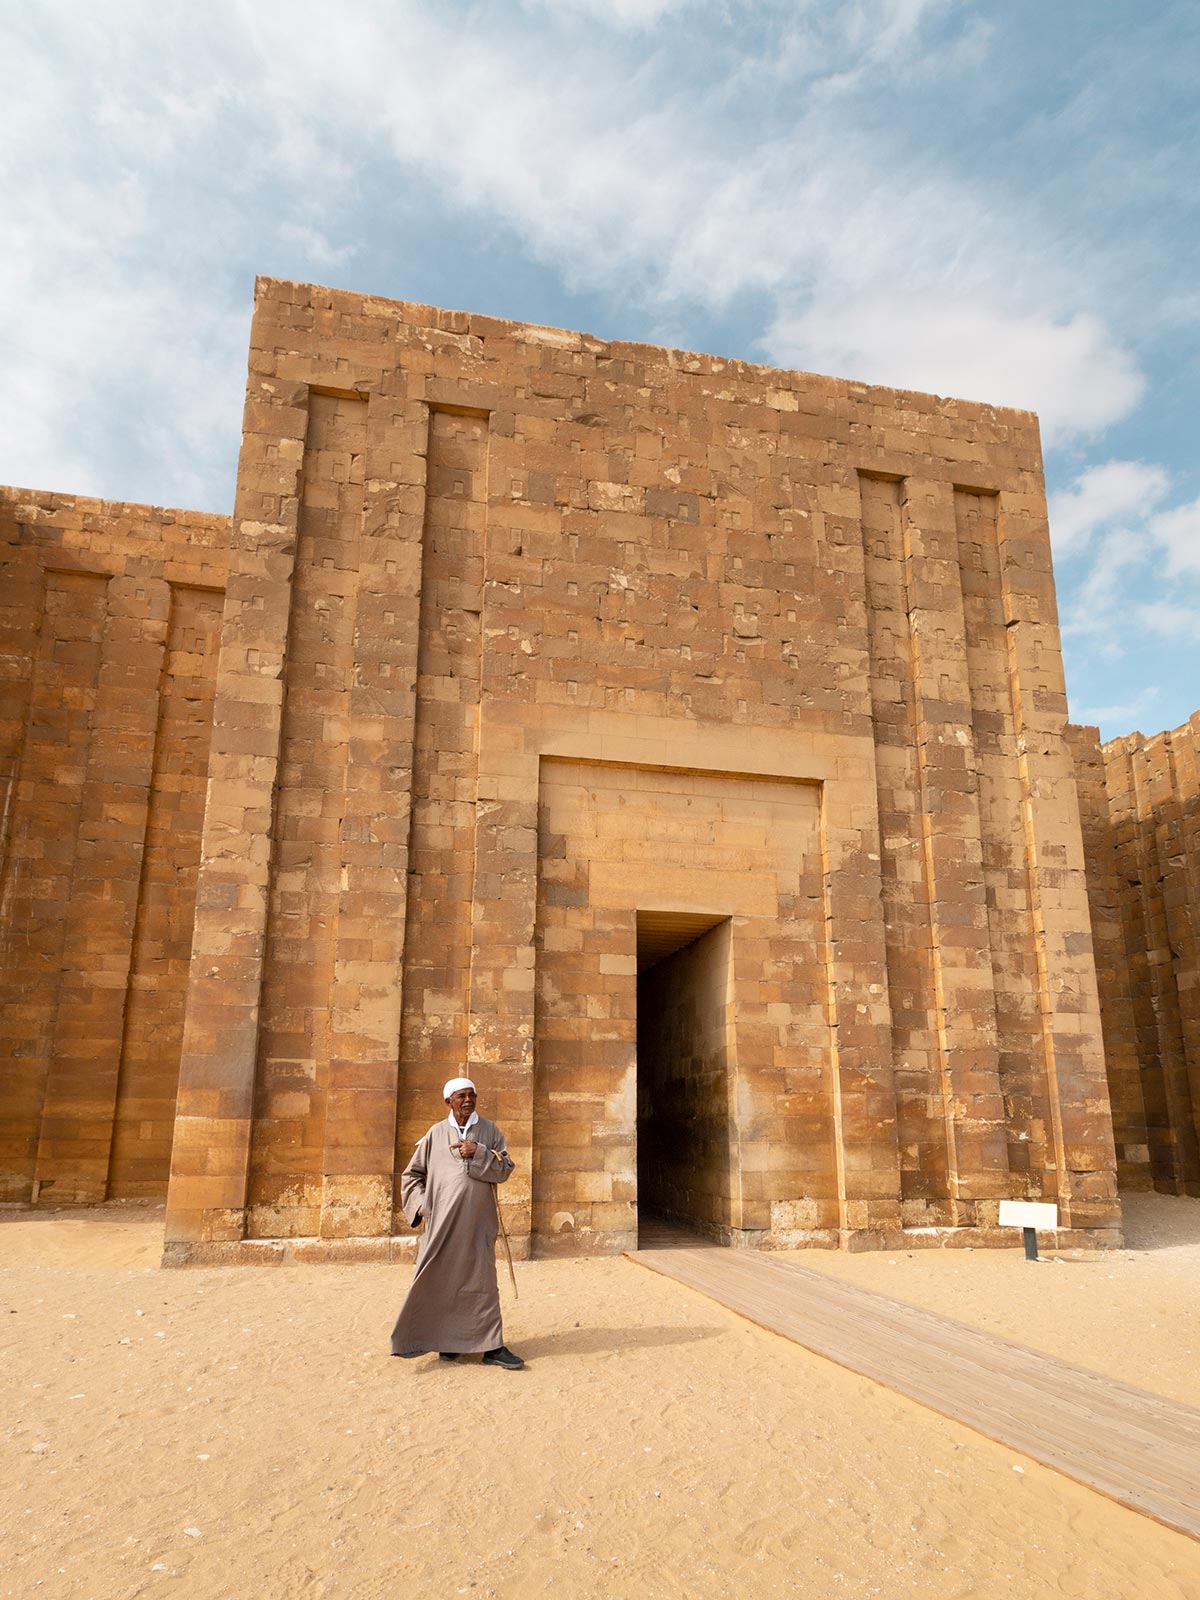 Entrée du complexe de Saqqara, Égypte / Saqqara entrance, Egypt